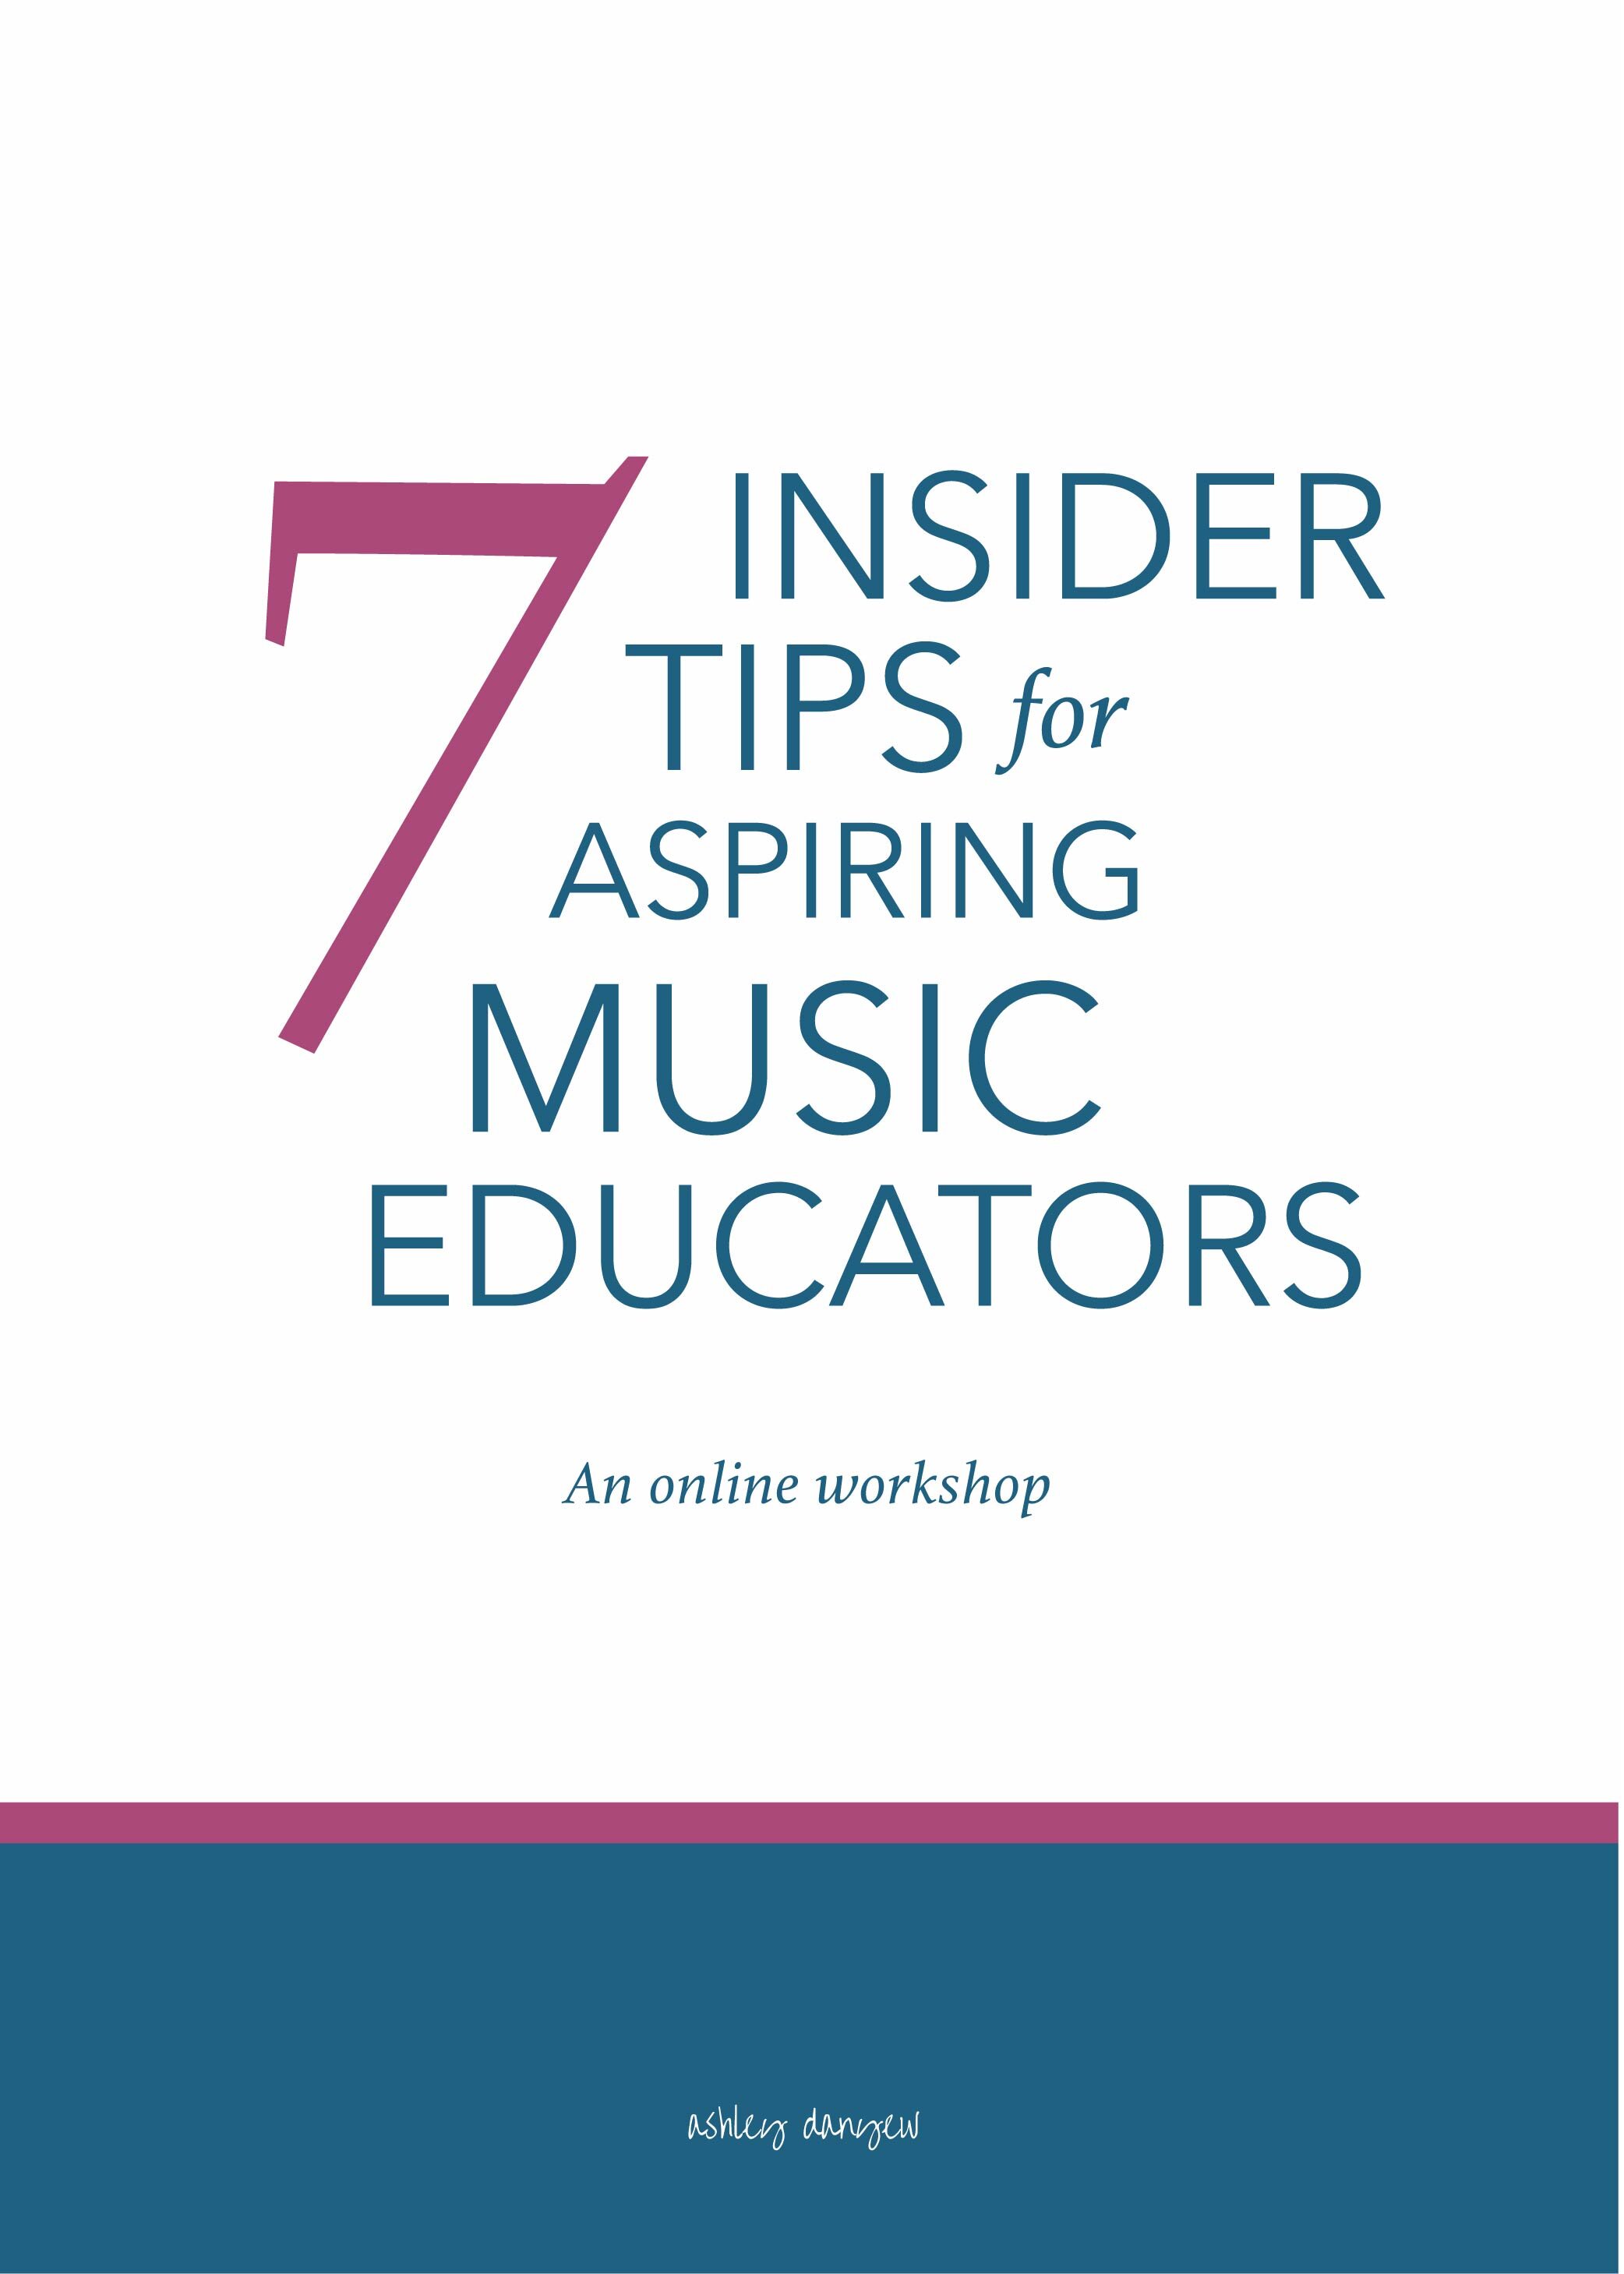 7 Insider Tips for Aspiring Music Educators